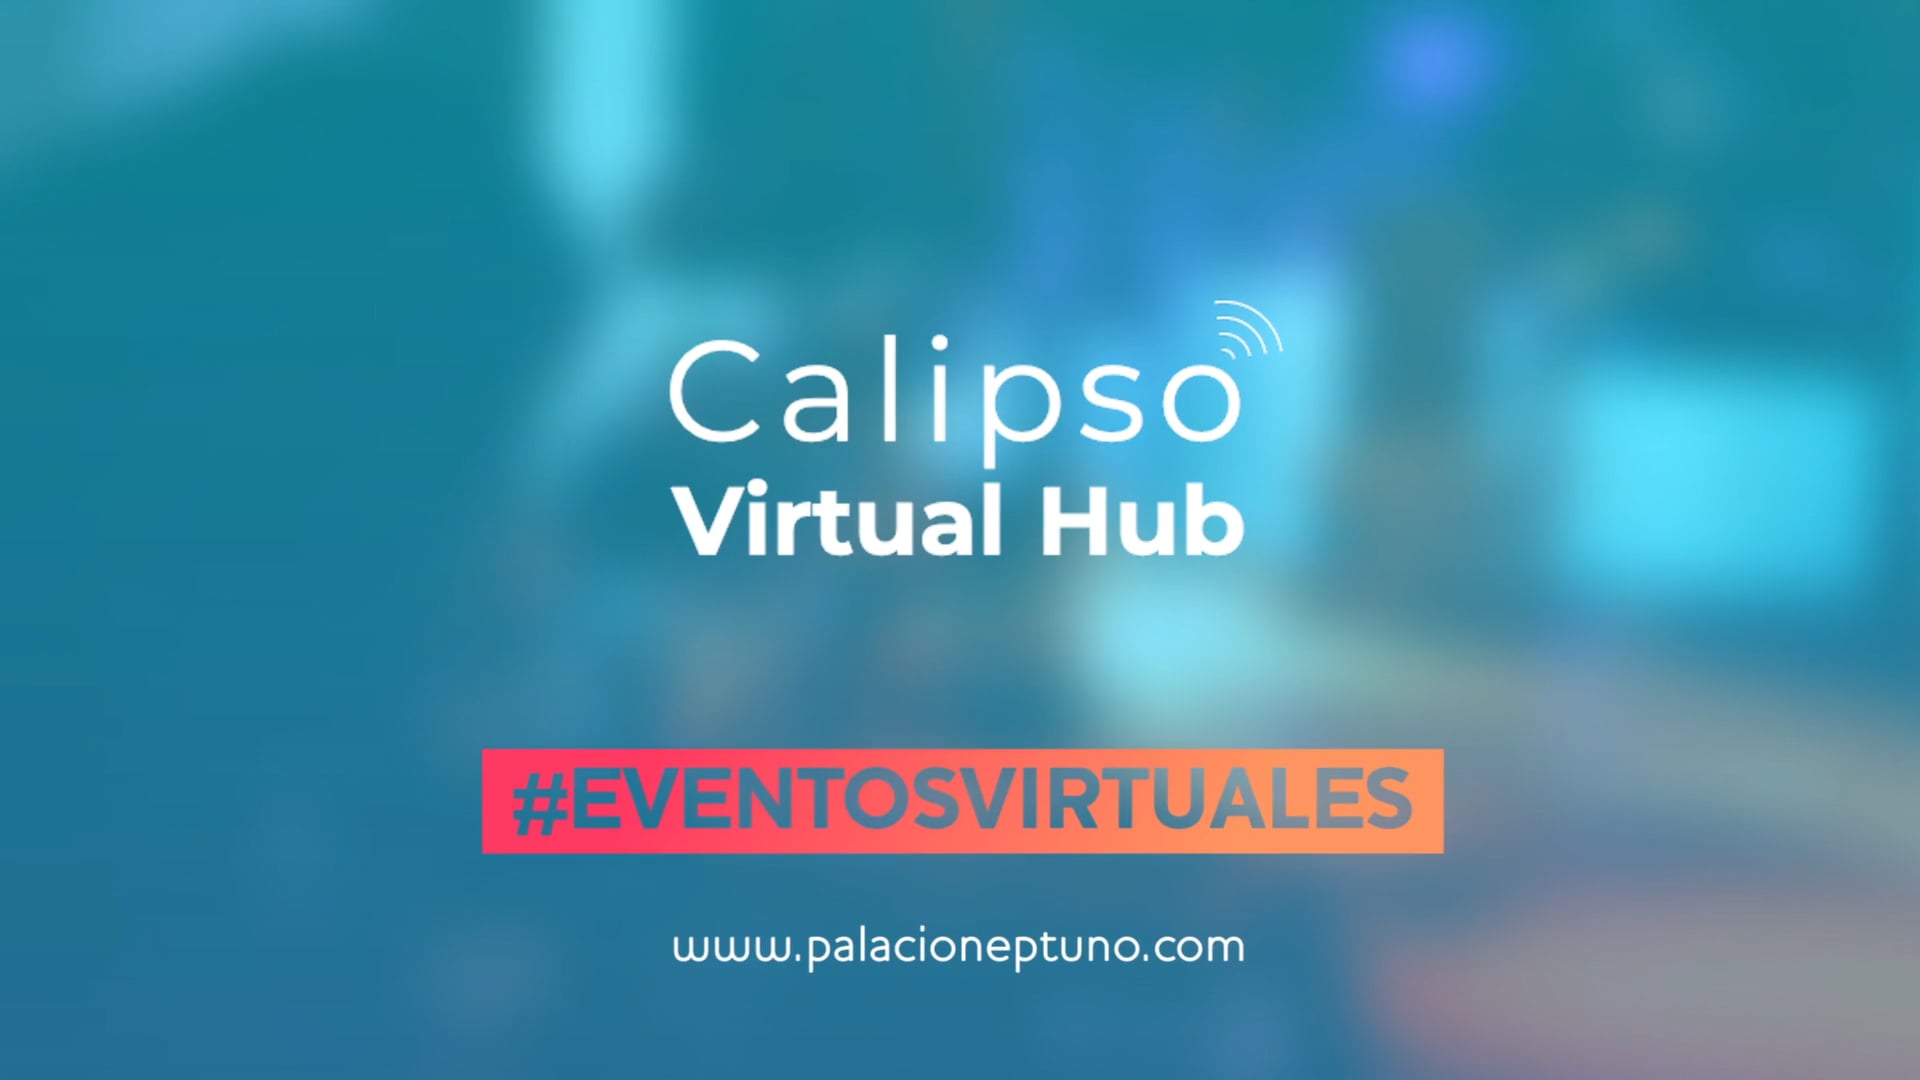 CALIPSO VIRTUAL HUB @ Palacio Neptuno